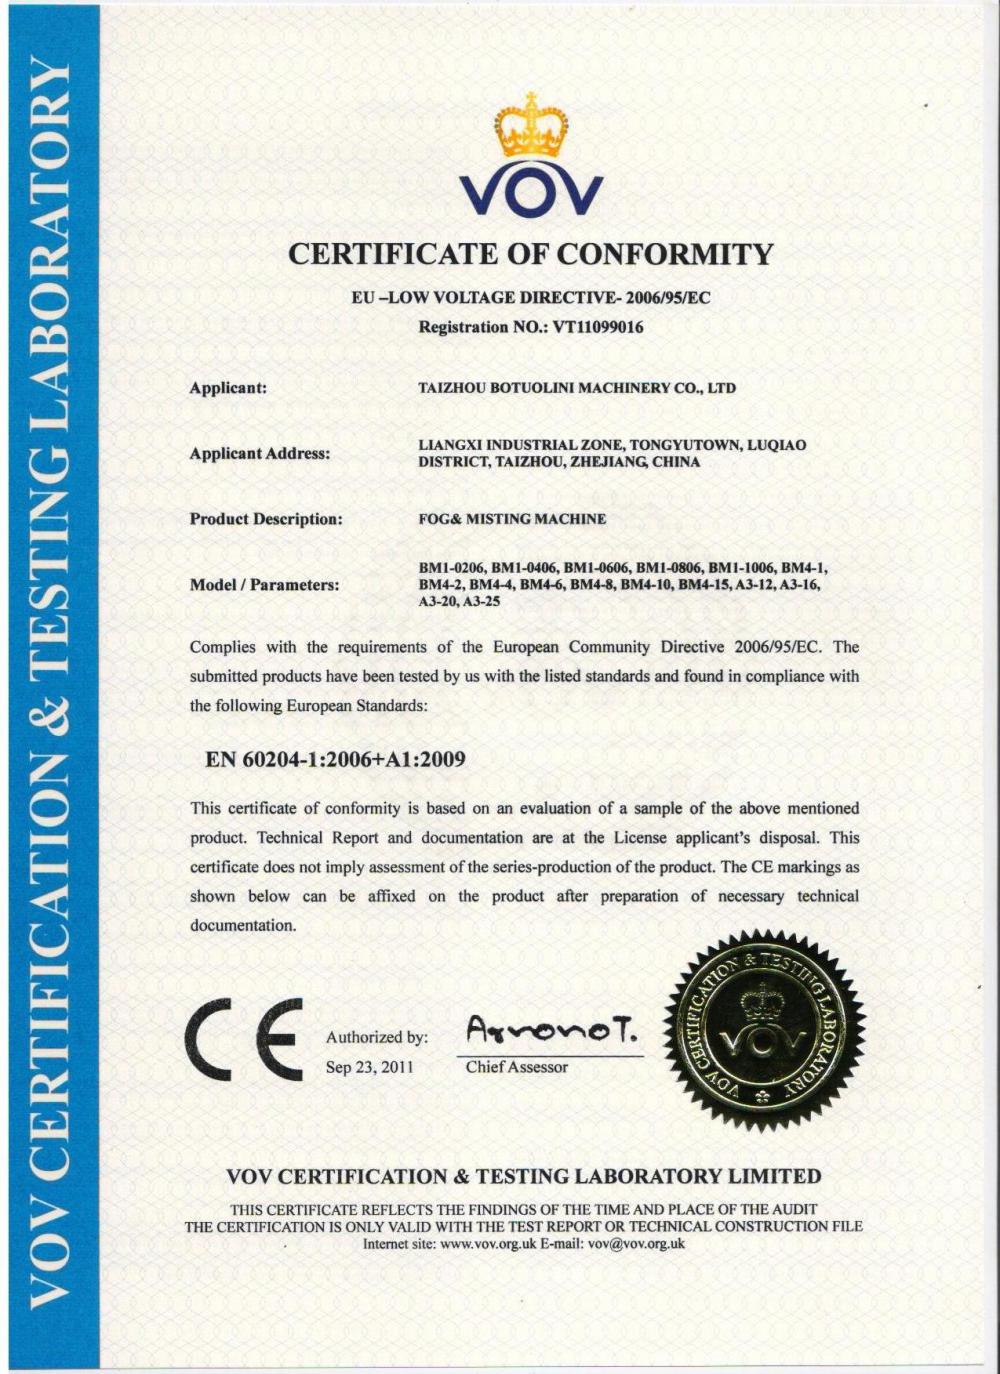 Fogging Machine CE Certificate